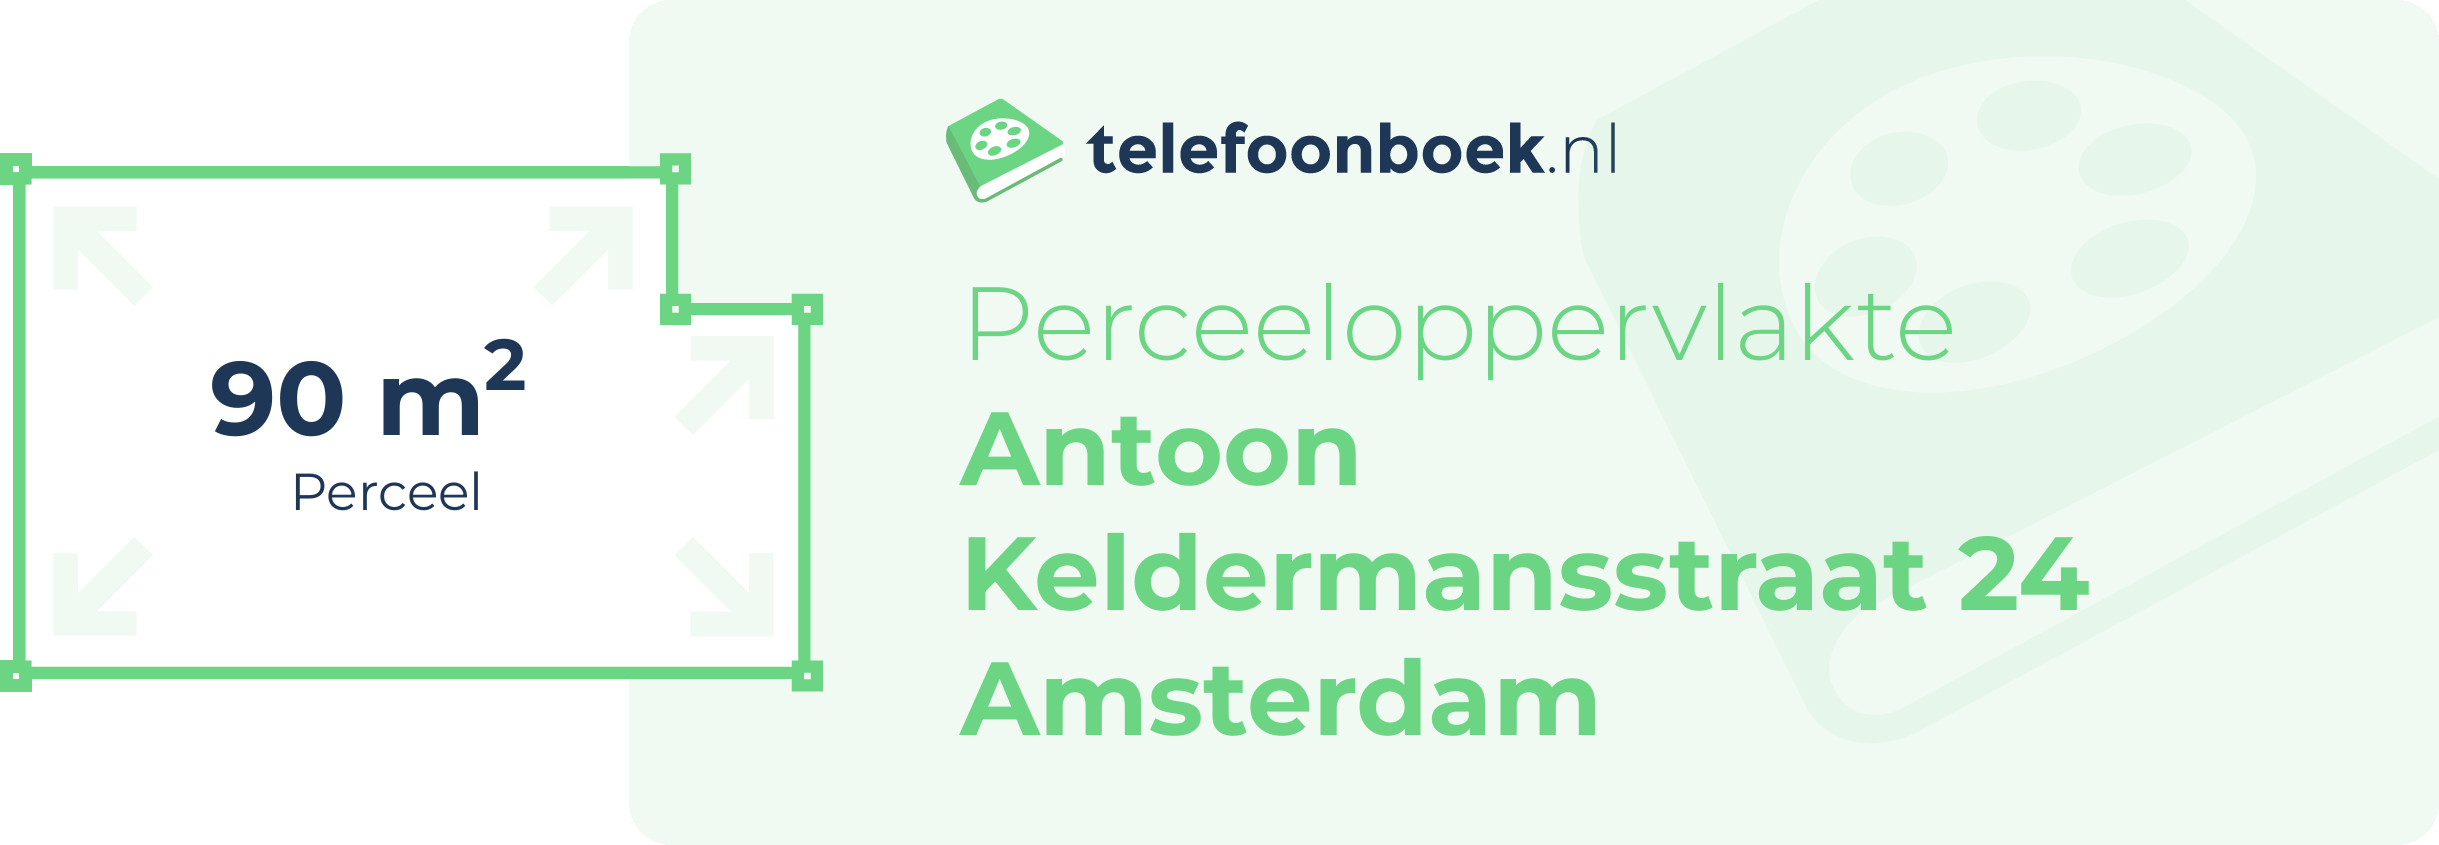 Perceeloppervlakte Antoon Keldermansstraat 24 Amsterdam